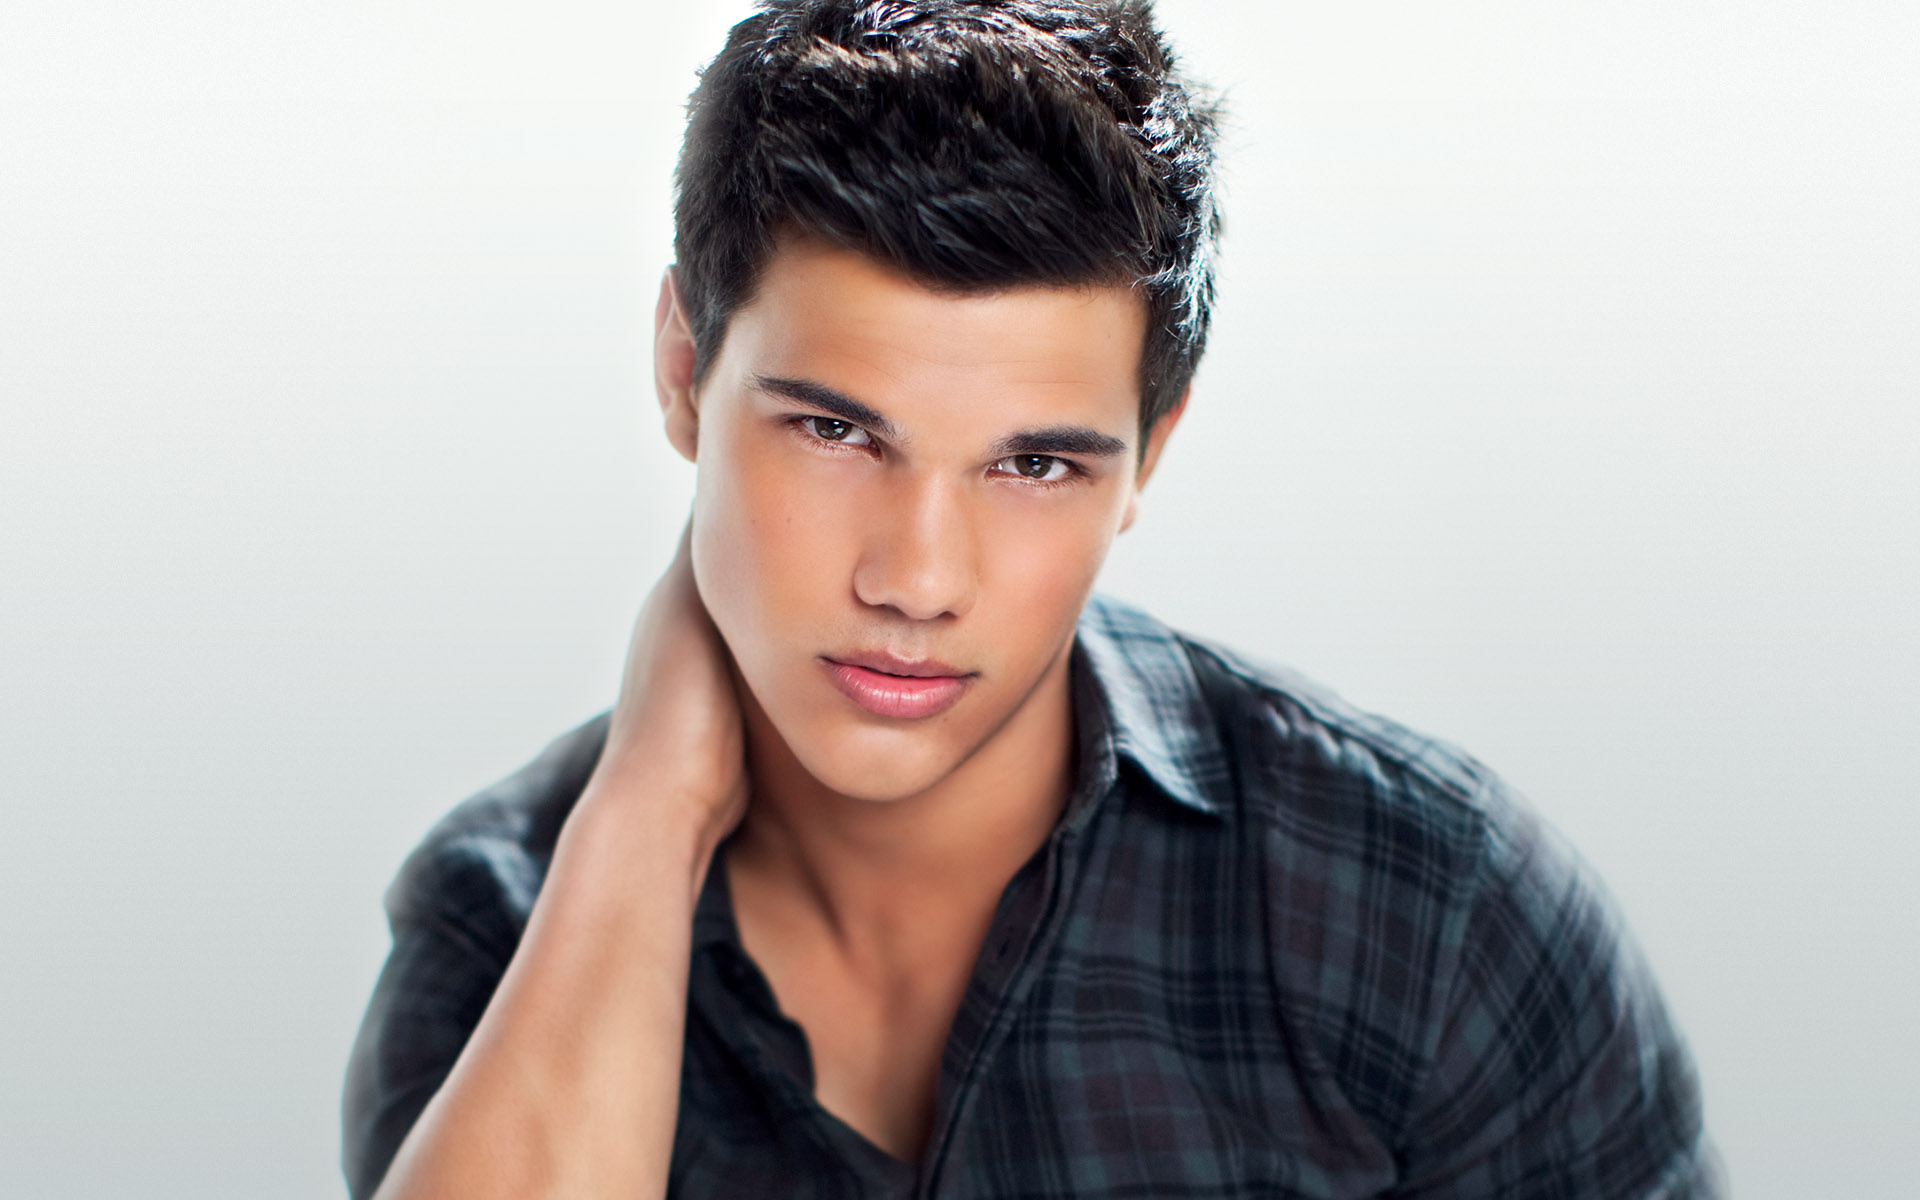  Taylor Lautner HQ Background Images